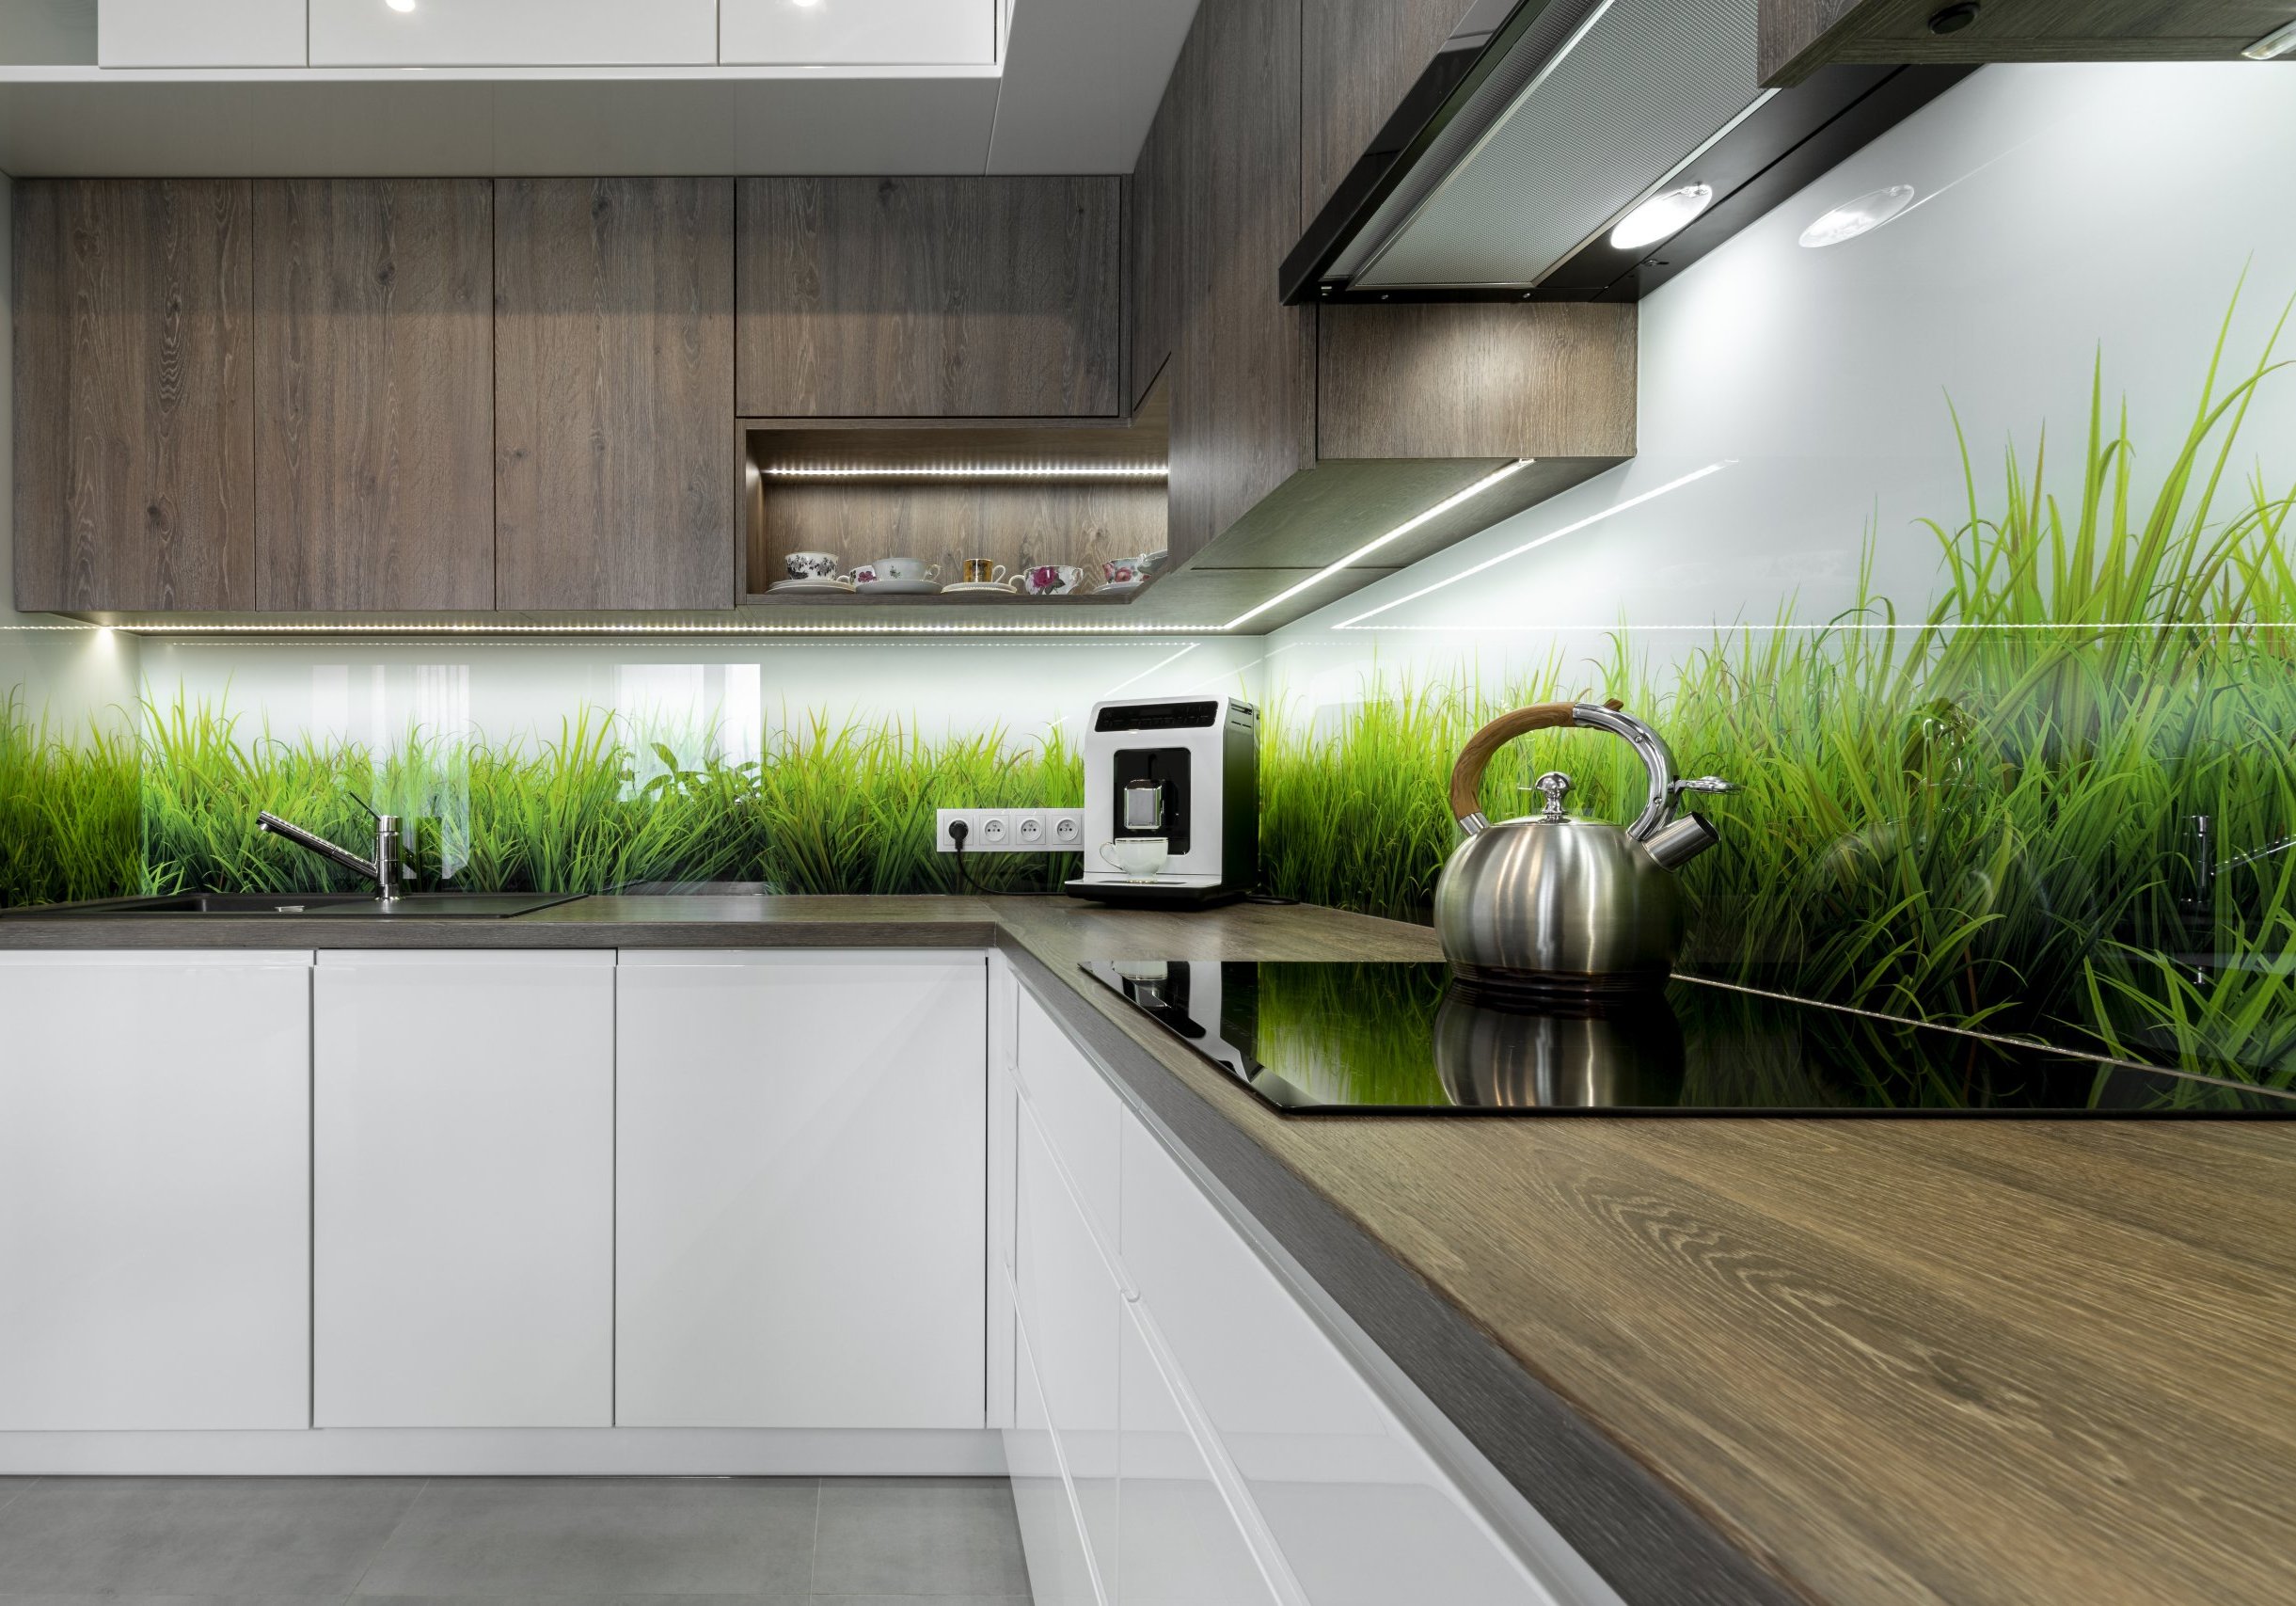 Kuchynska linka so sklenenou kuchynskou zastenou s travou na obrazku